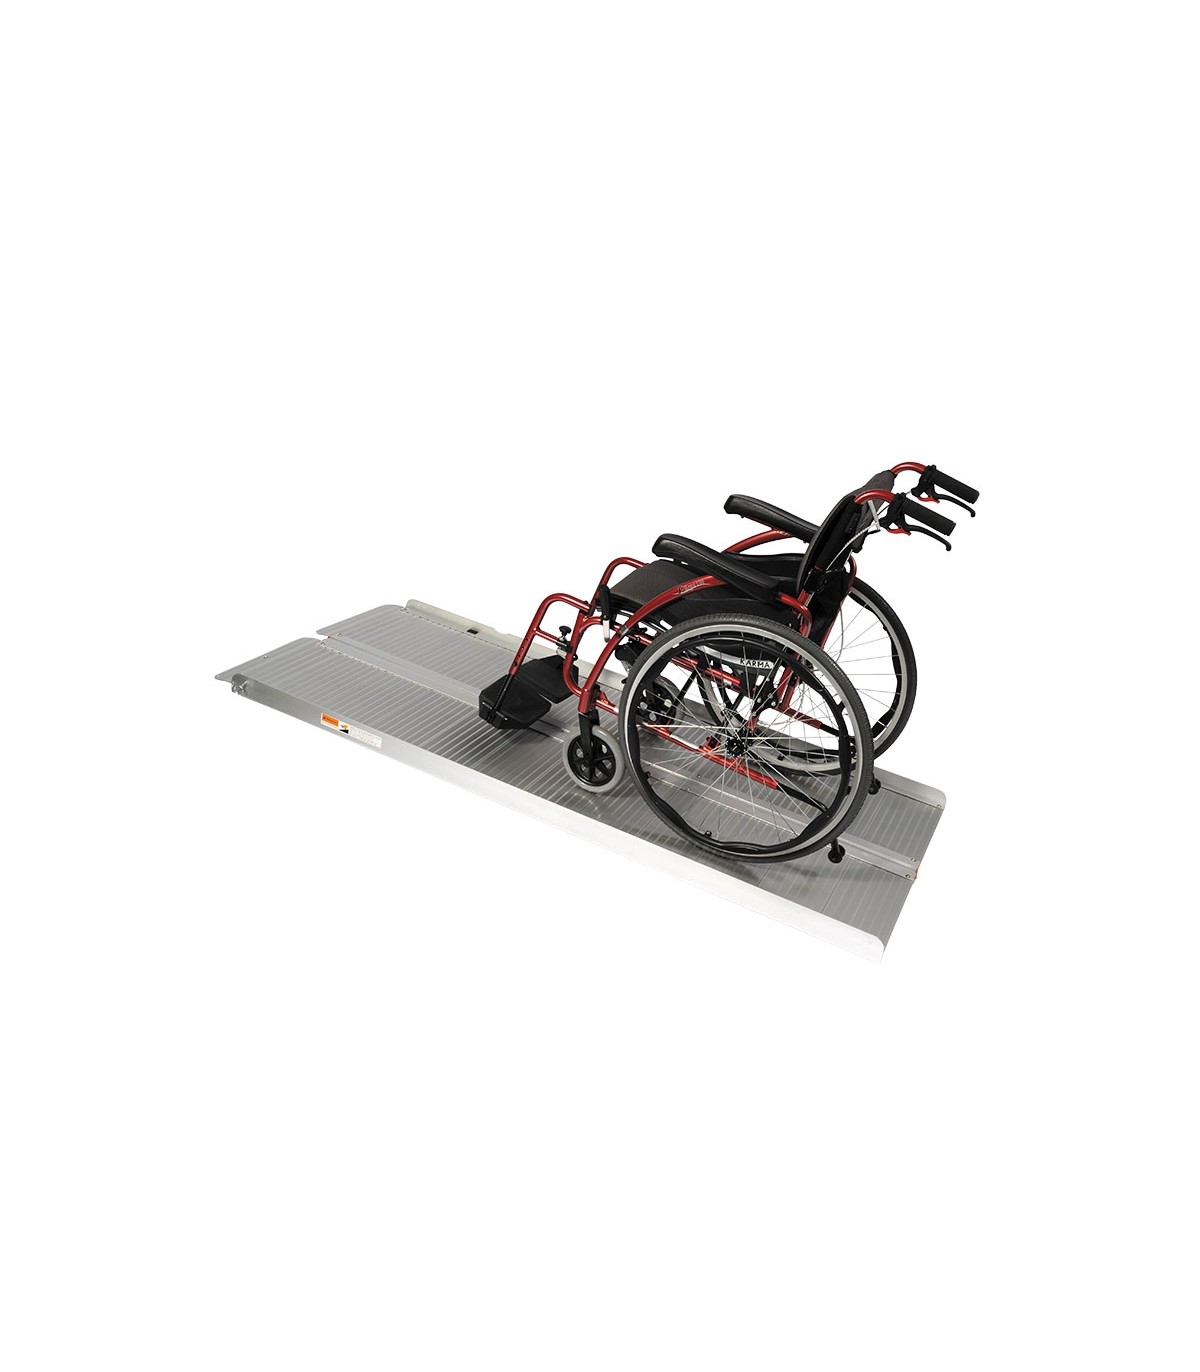 Rampe d'accès portative pour faciliter l'accès en fauteuil roulant.